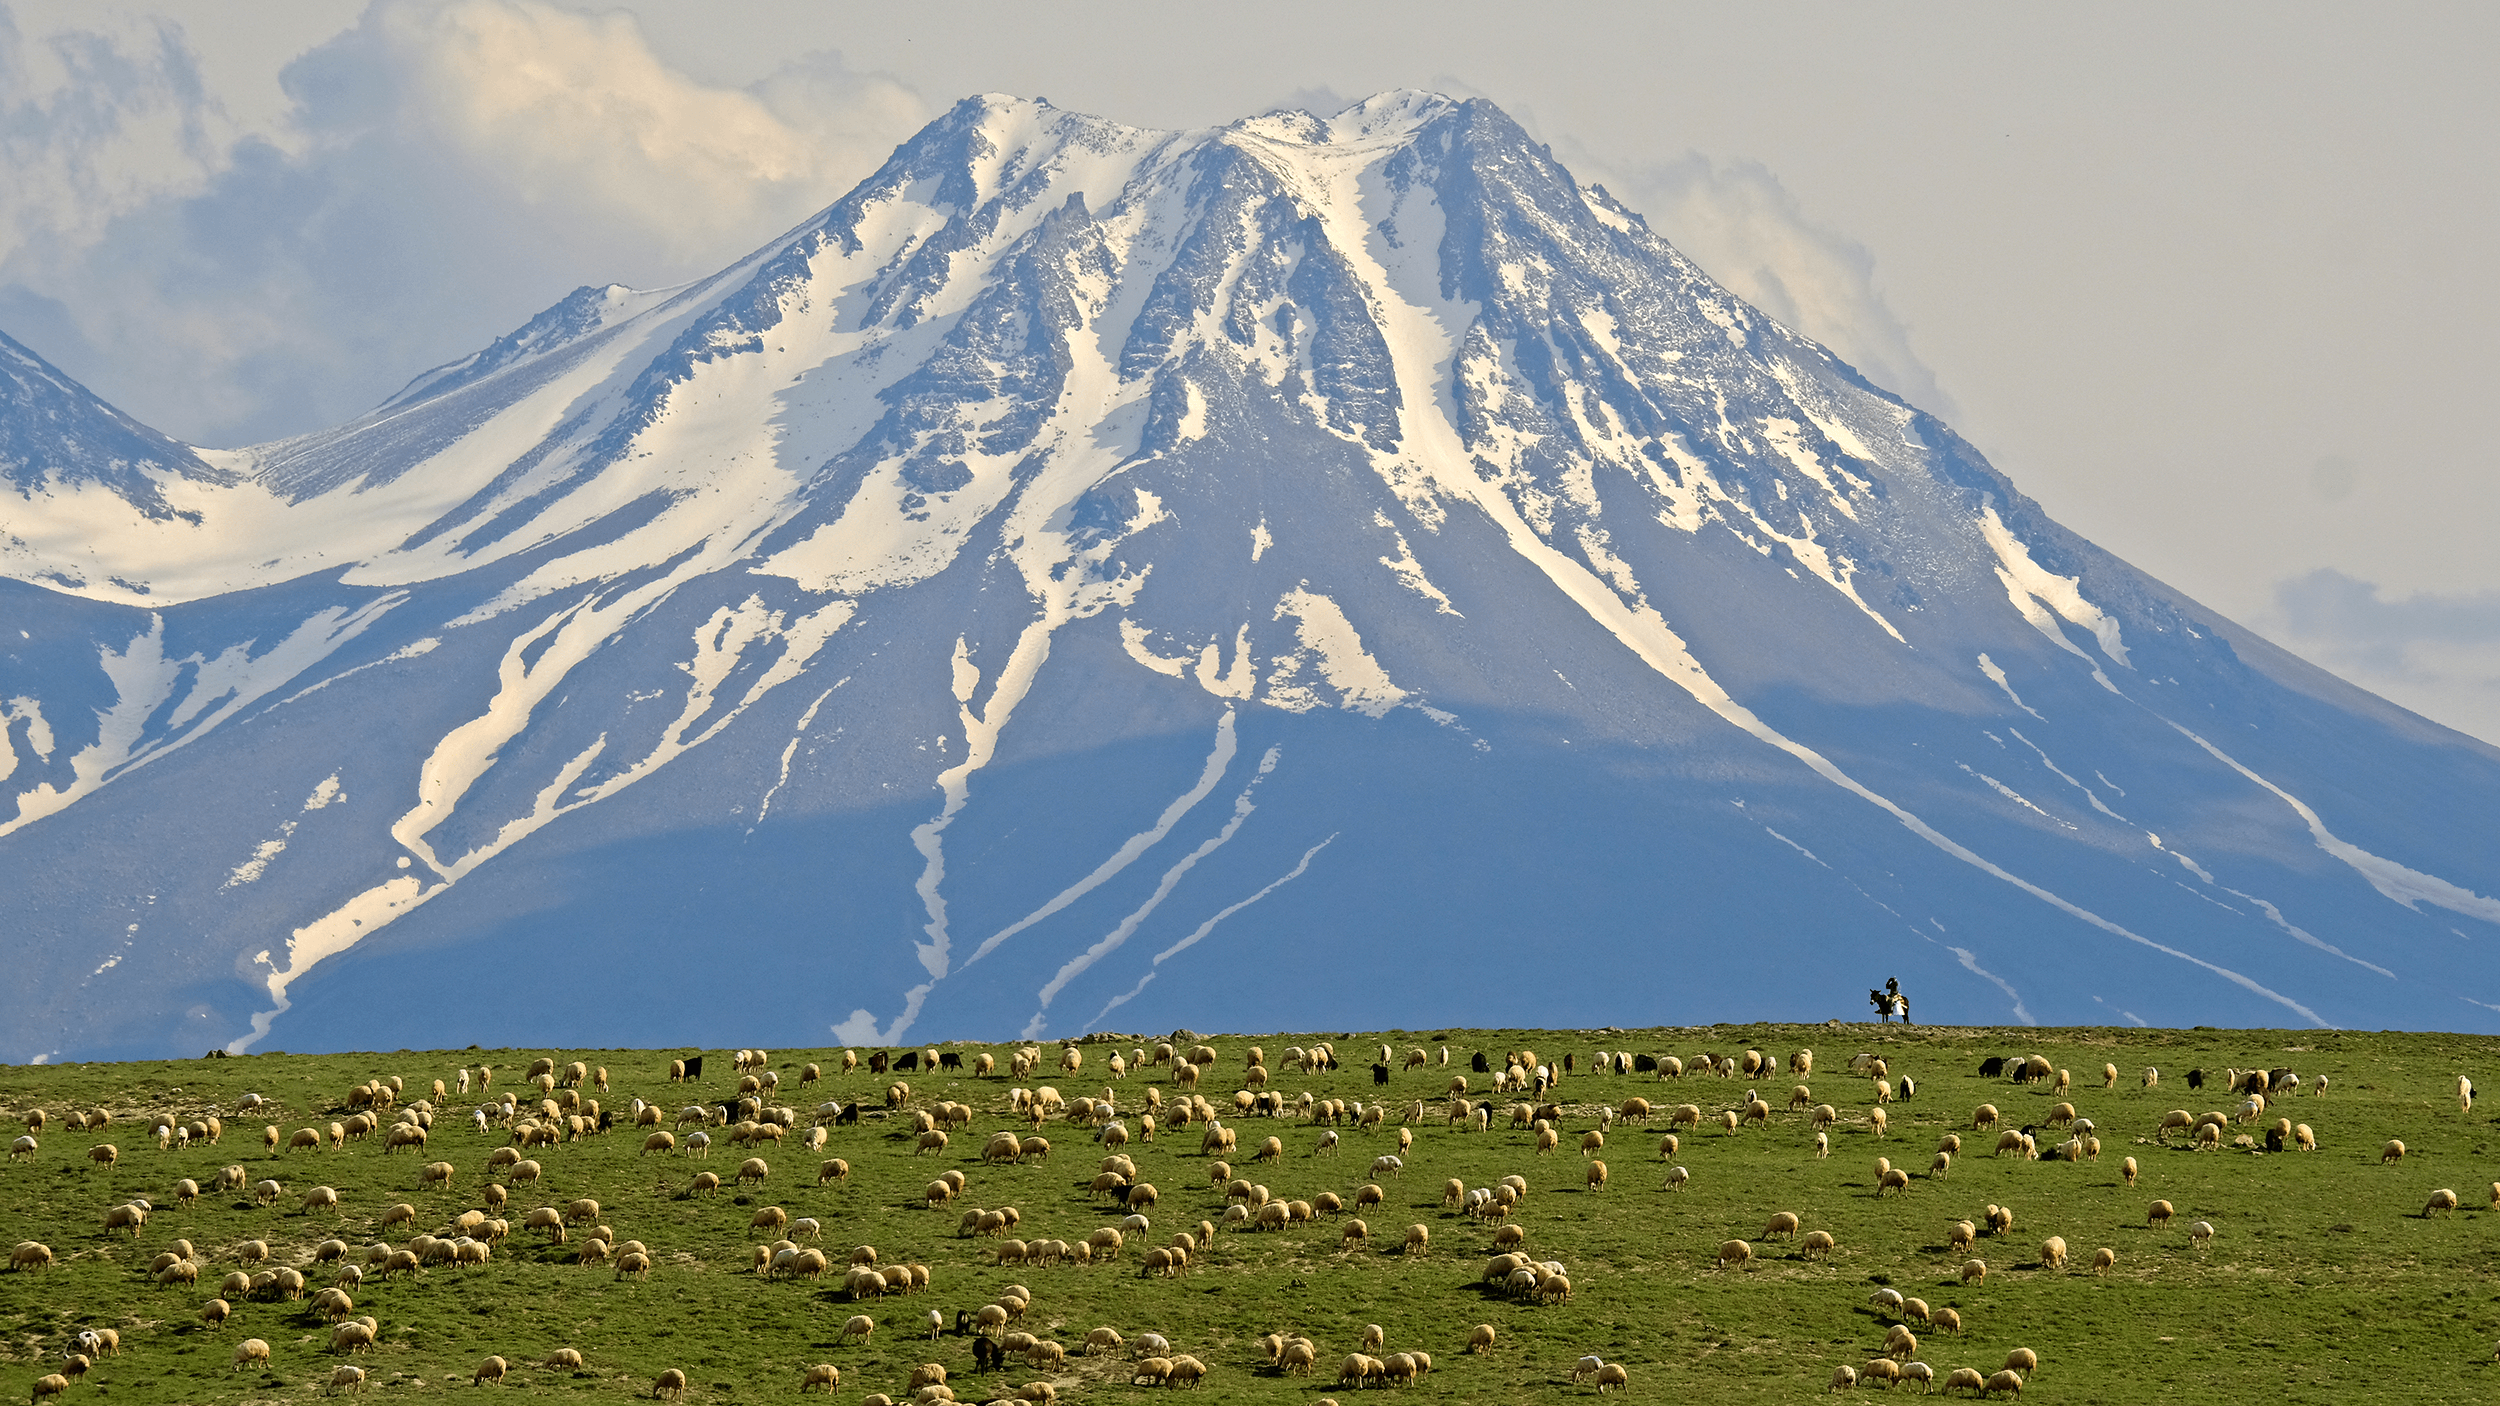 Mount Hasan & The Herd